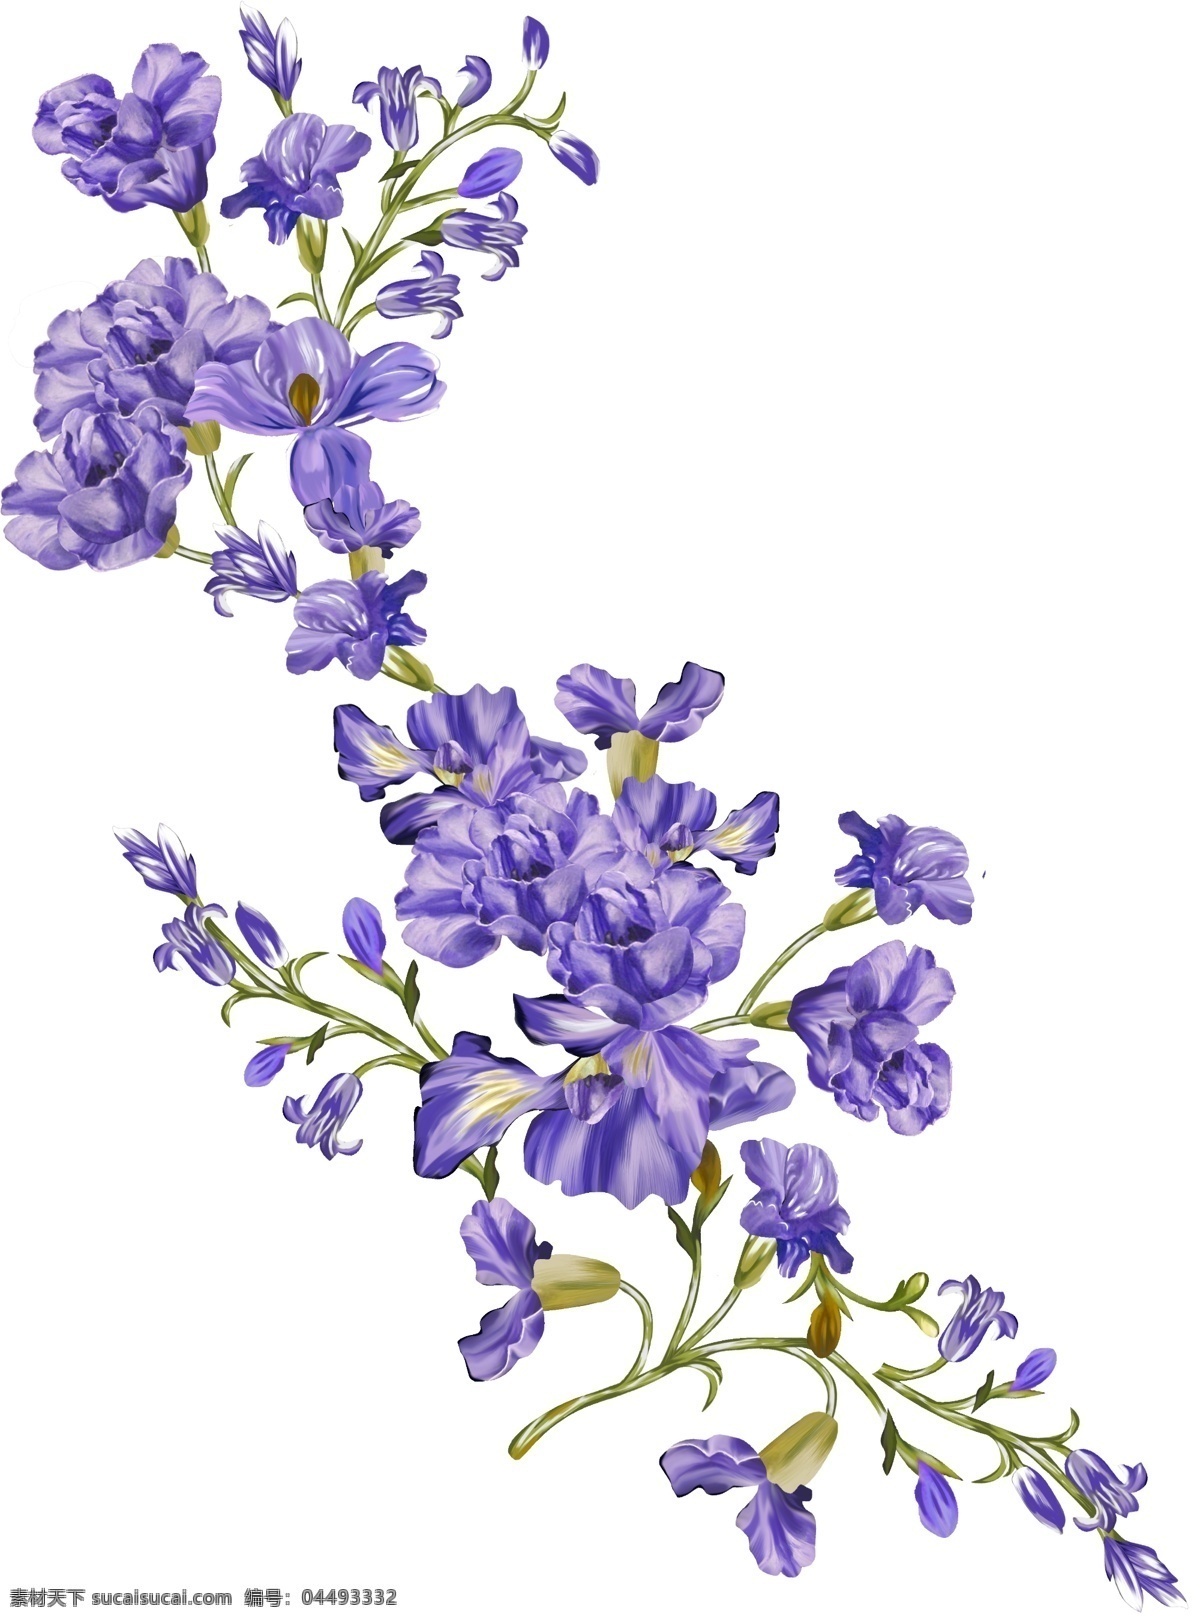 手绘紫色花朵 手绘花朵 紫色花朵 紫色小花 紫色花卉 手绘花卉